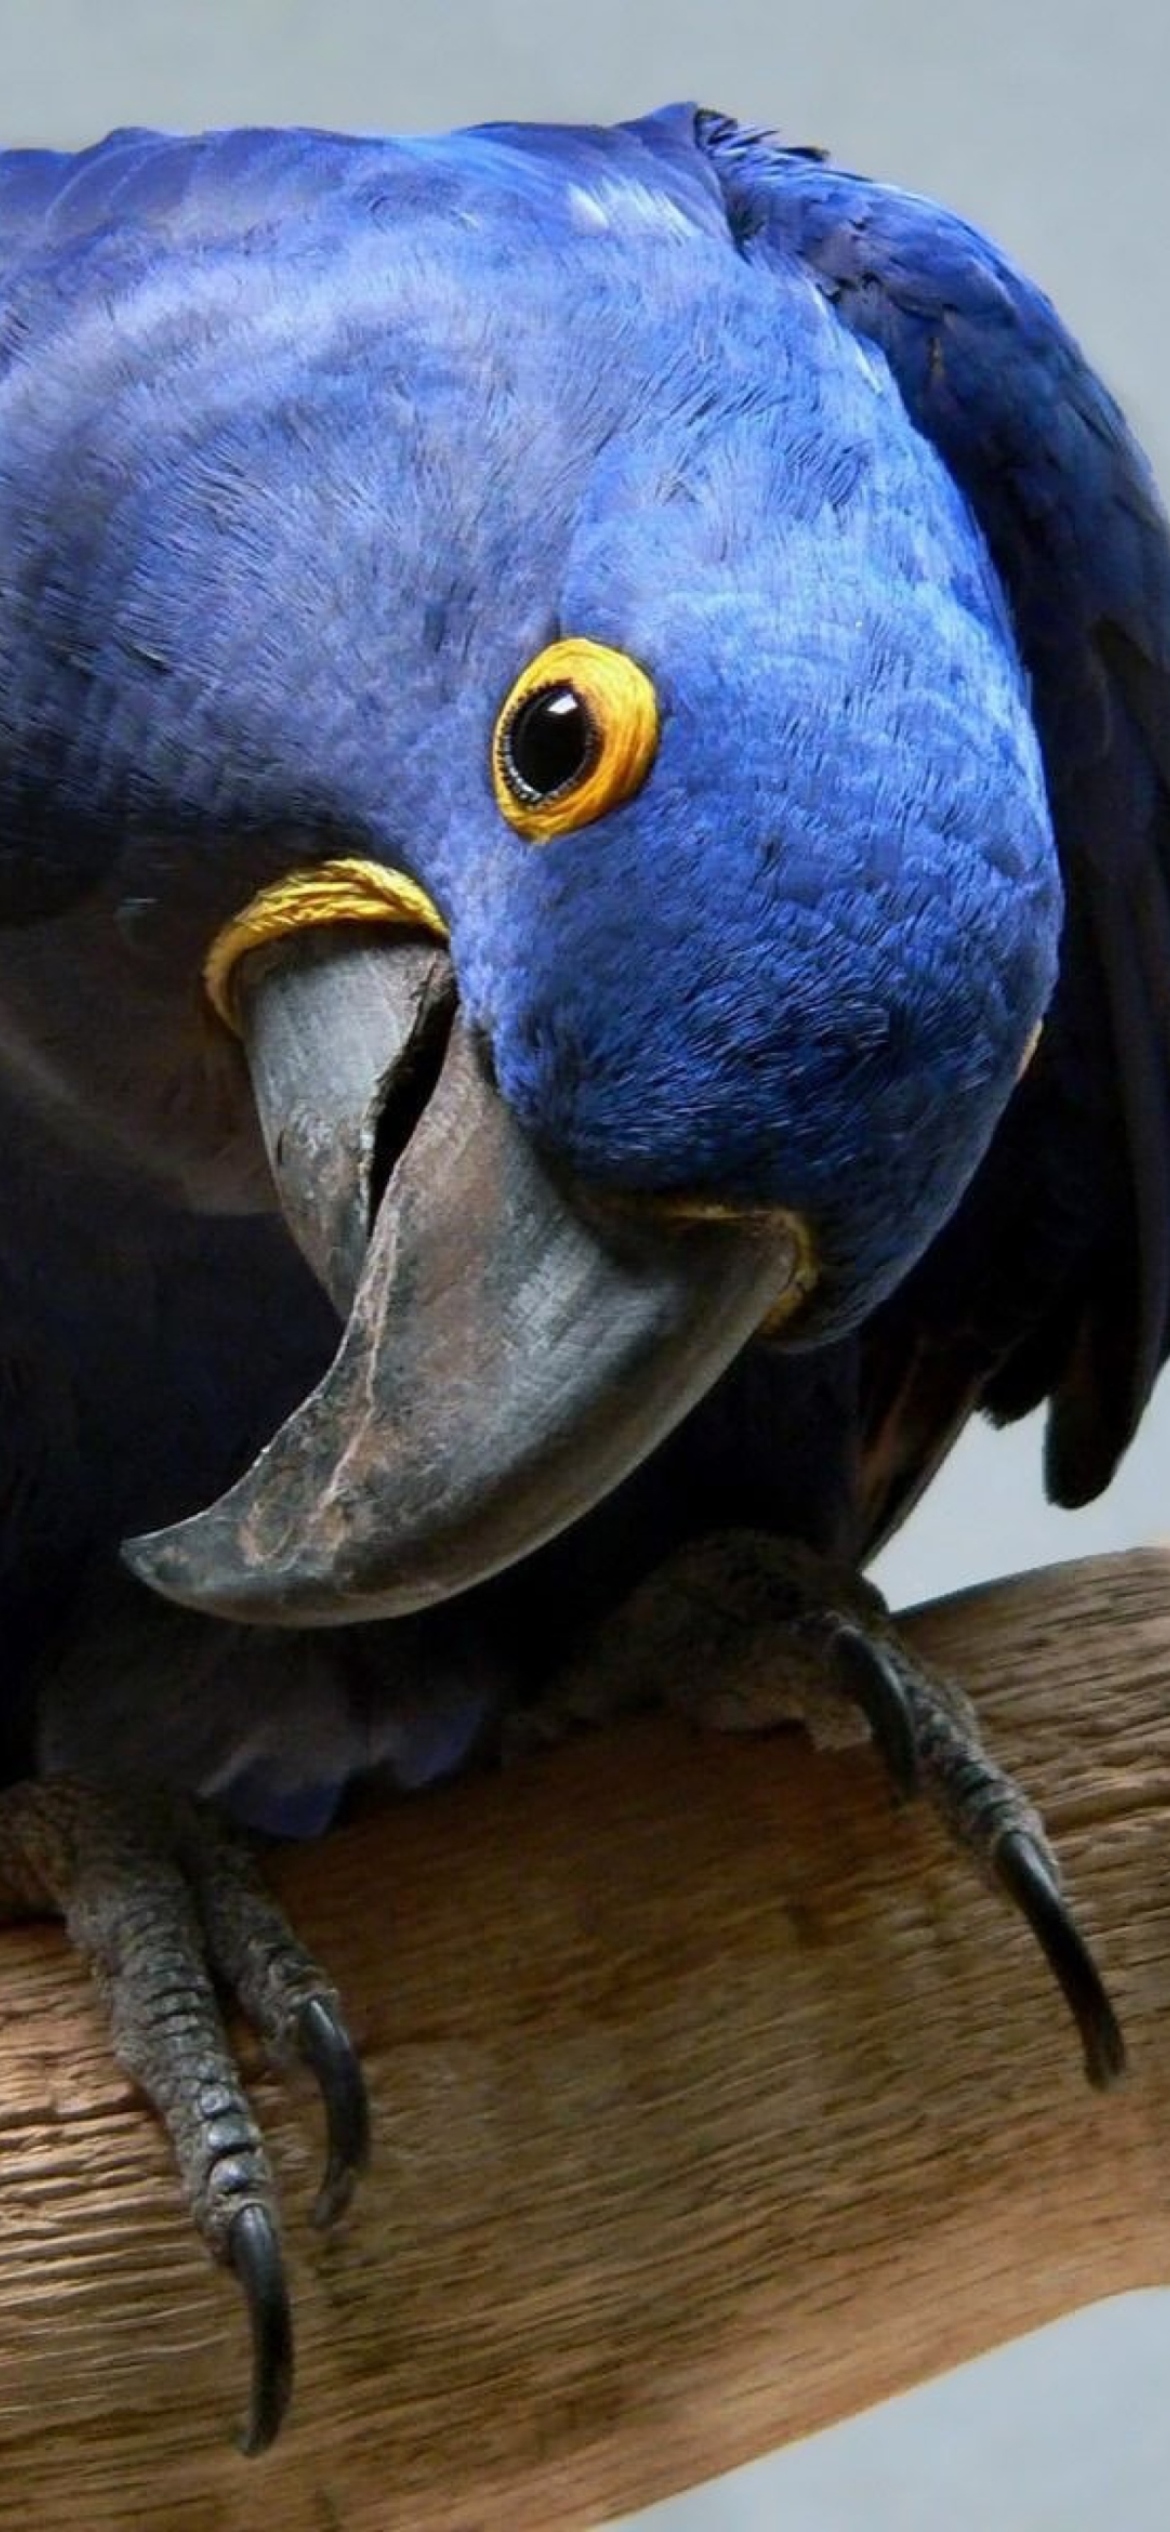 Das Cute Blue Parrot Wallpaper 1170x2532